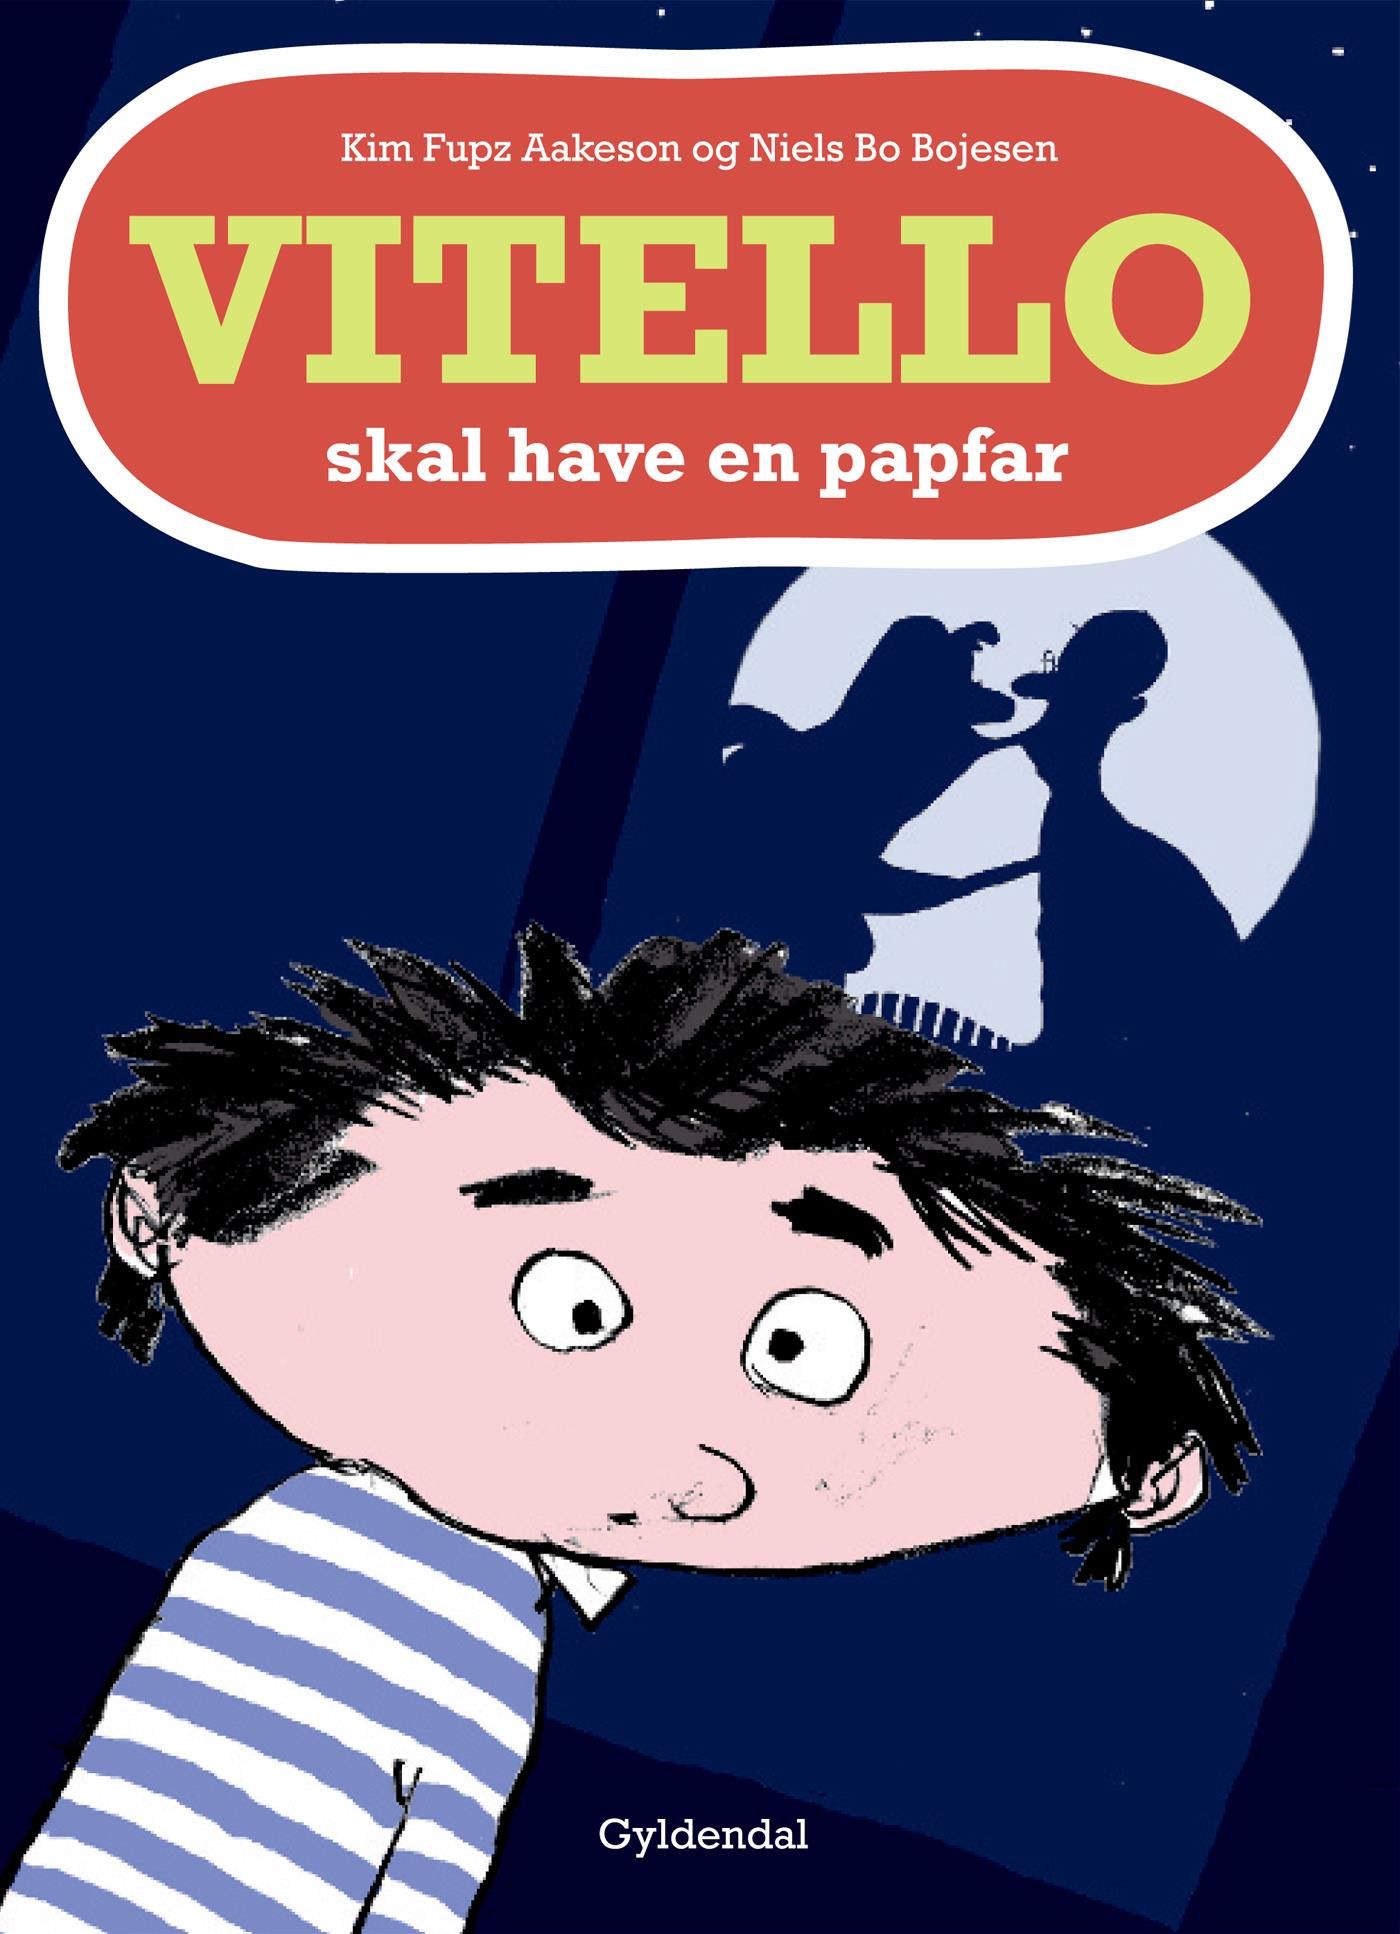 Vitello skal have en papfar - Lyt&læs, e-bog af Niels Bo Bojesen, Kim Fupz Aakeson